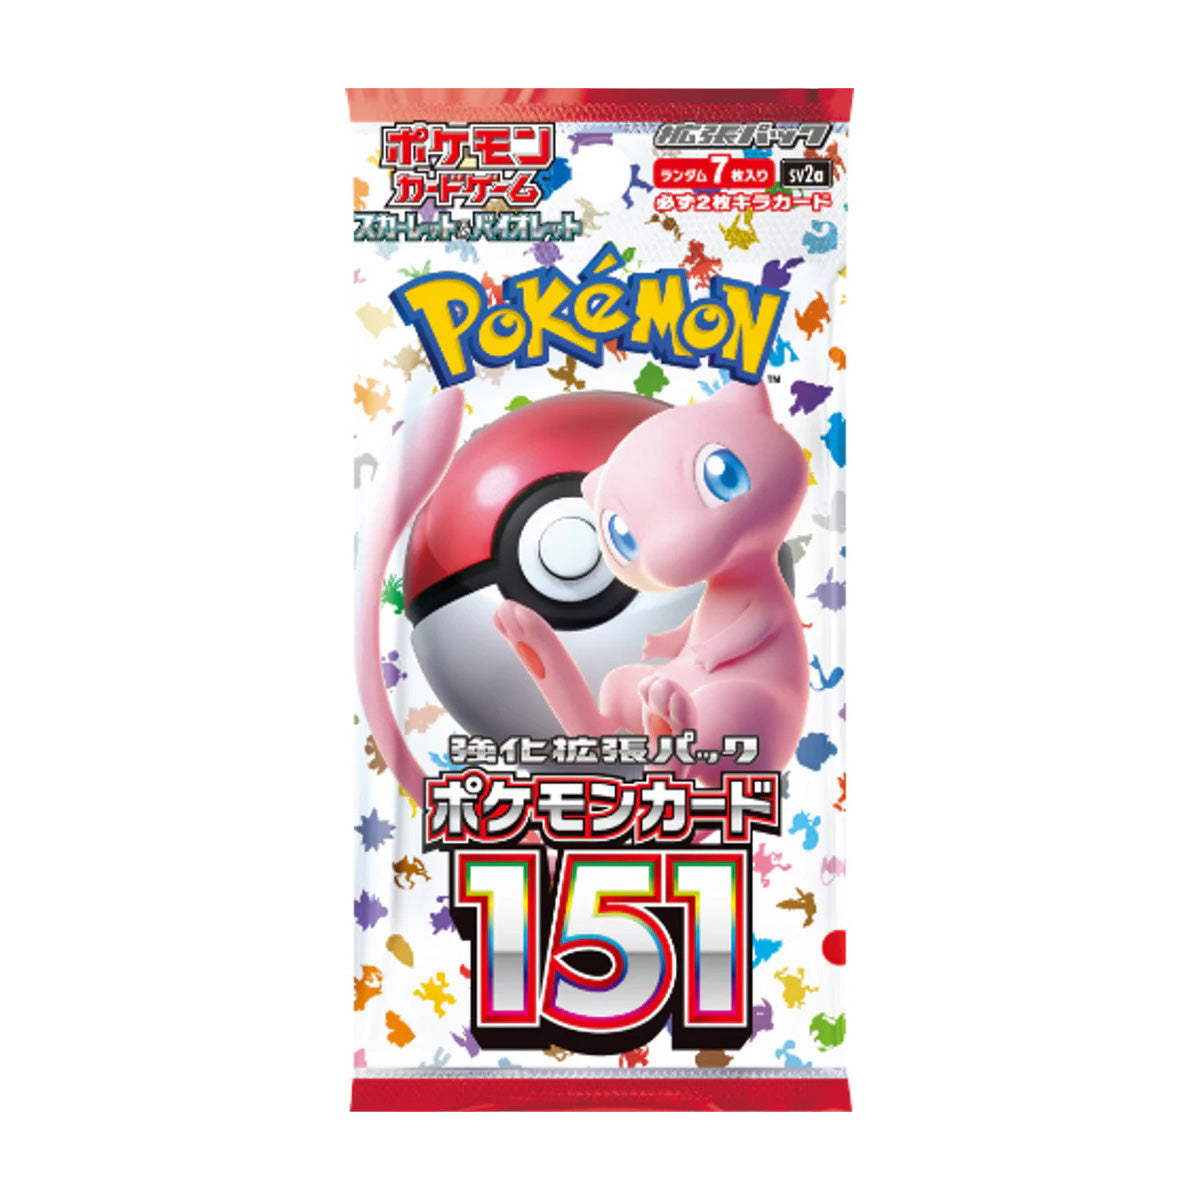 Pokemon 151 Korean Booster Box – Pro Shop Sports